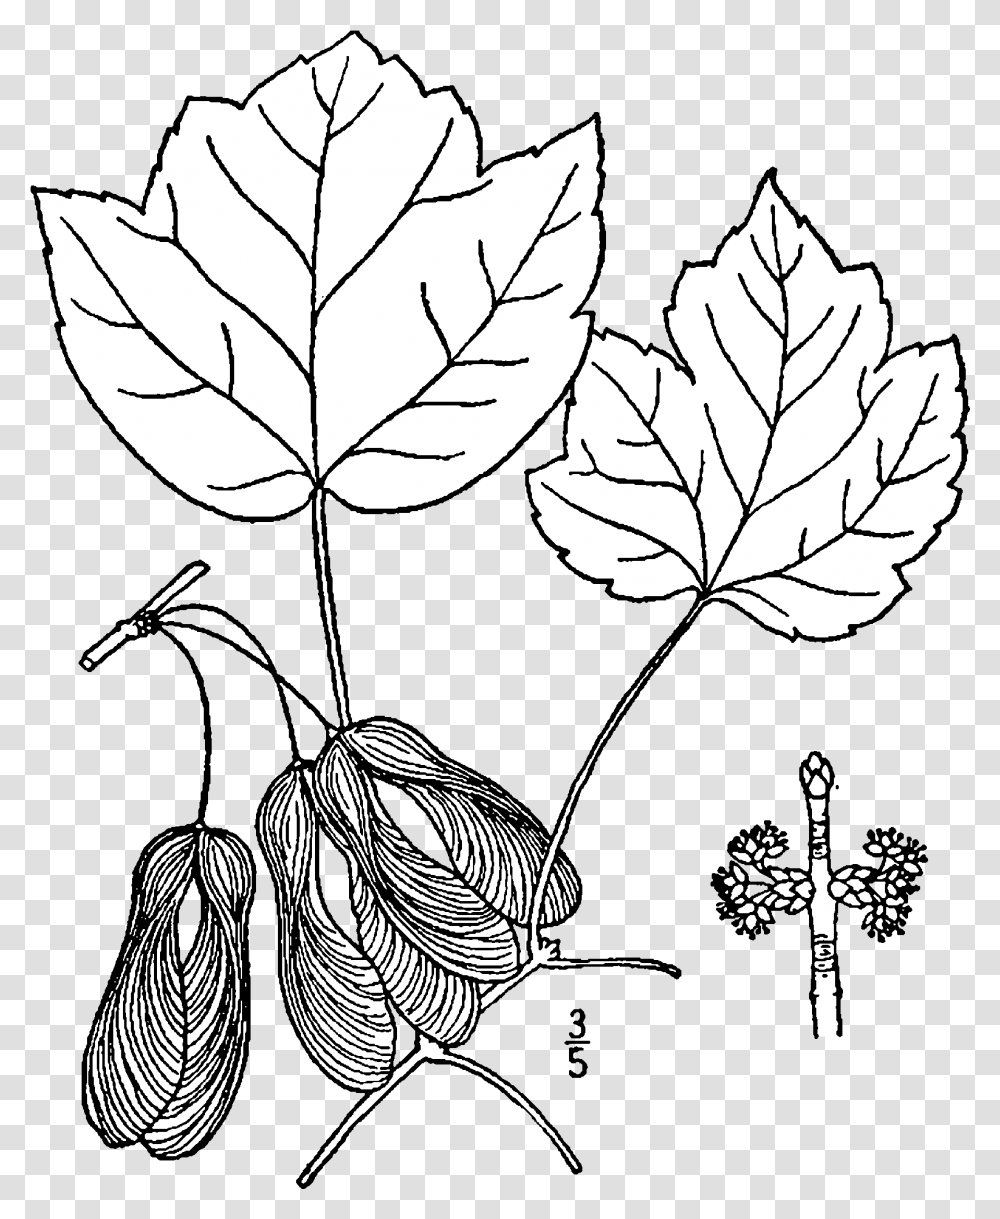 Acer Rubrum Trilobum Drawing Acer Rubrum Botanical Drawing, Leaf, Plant, Tree, Maple Leaf Transparent Png